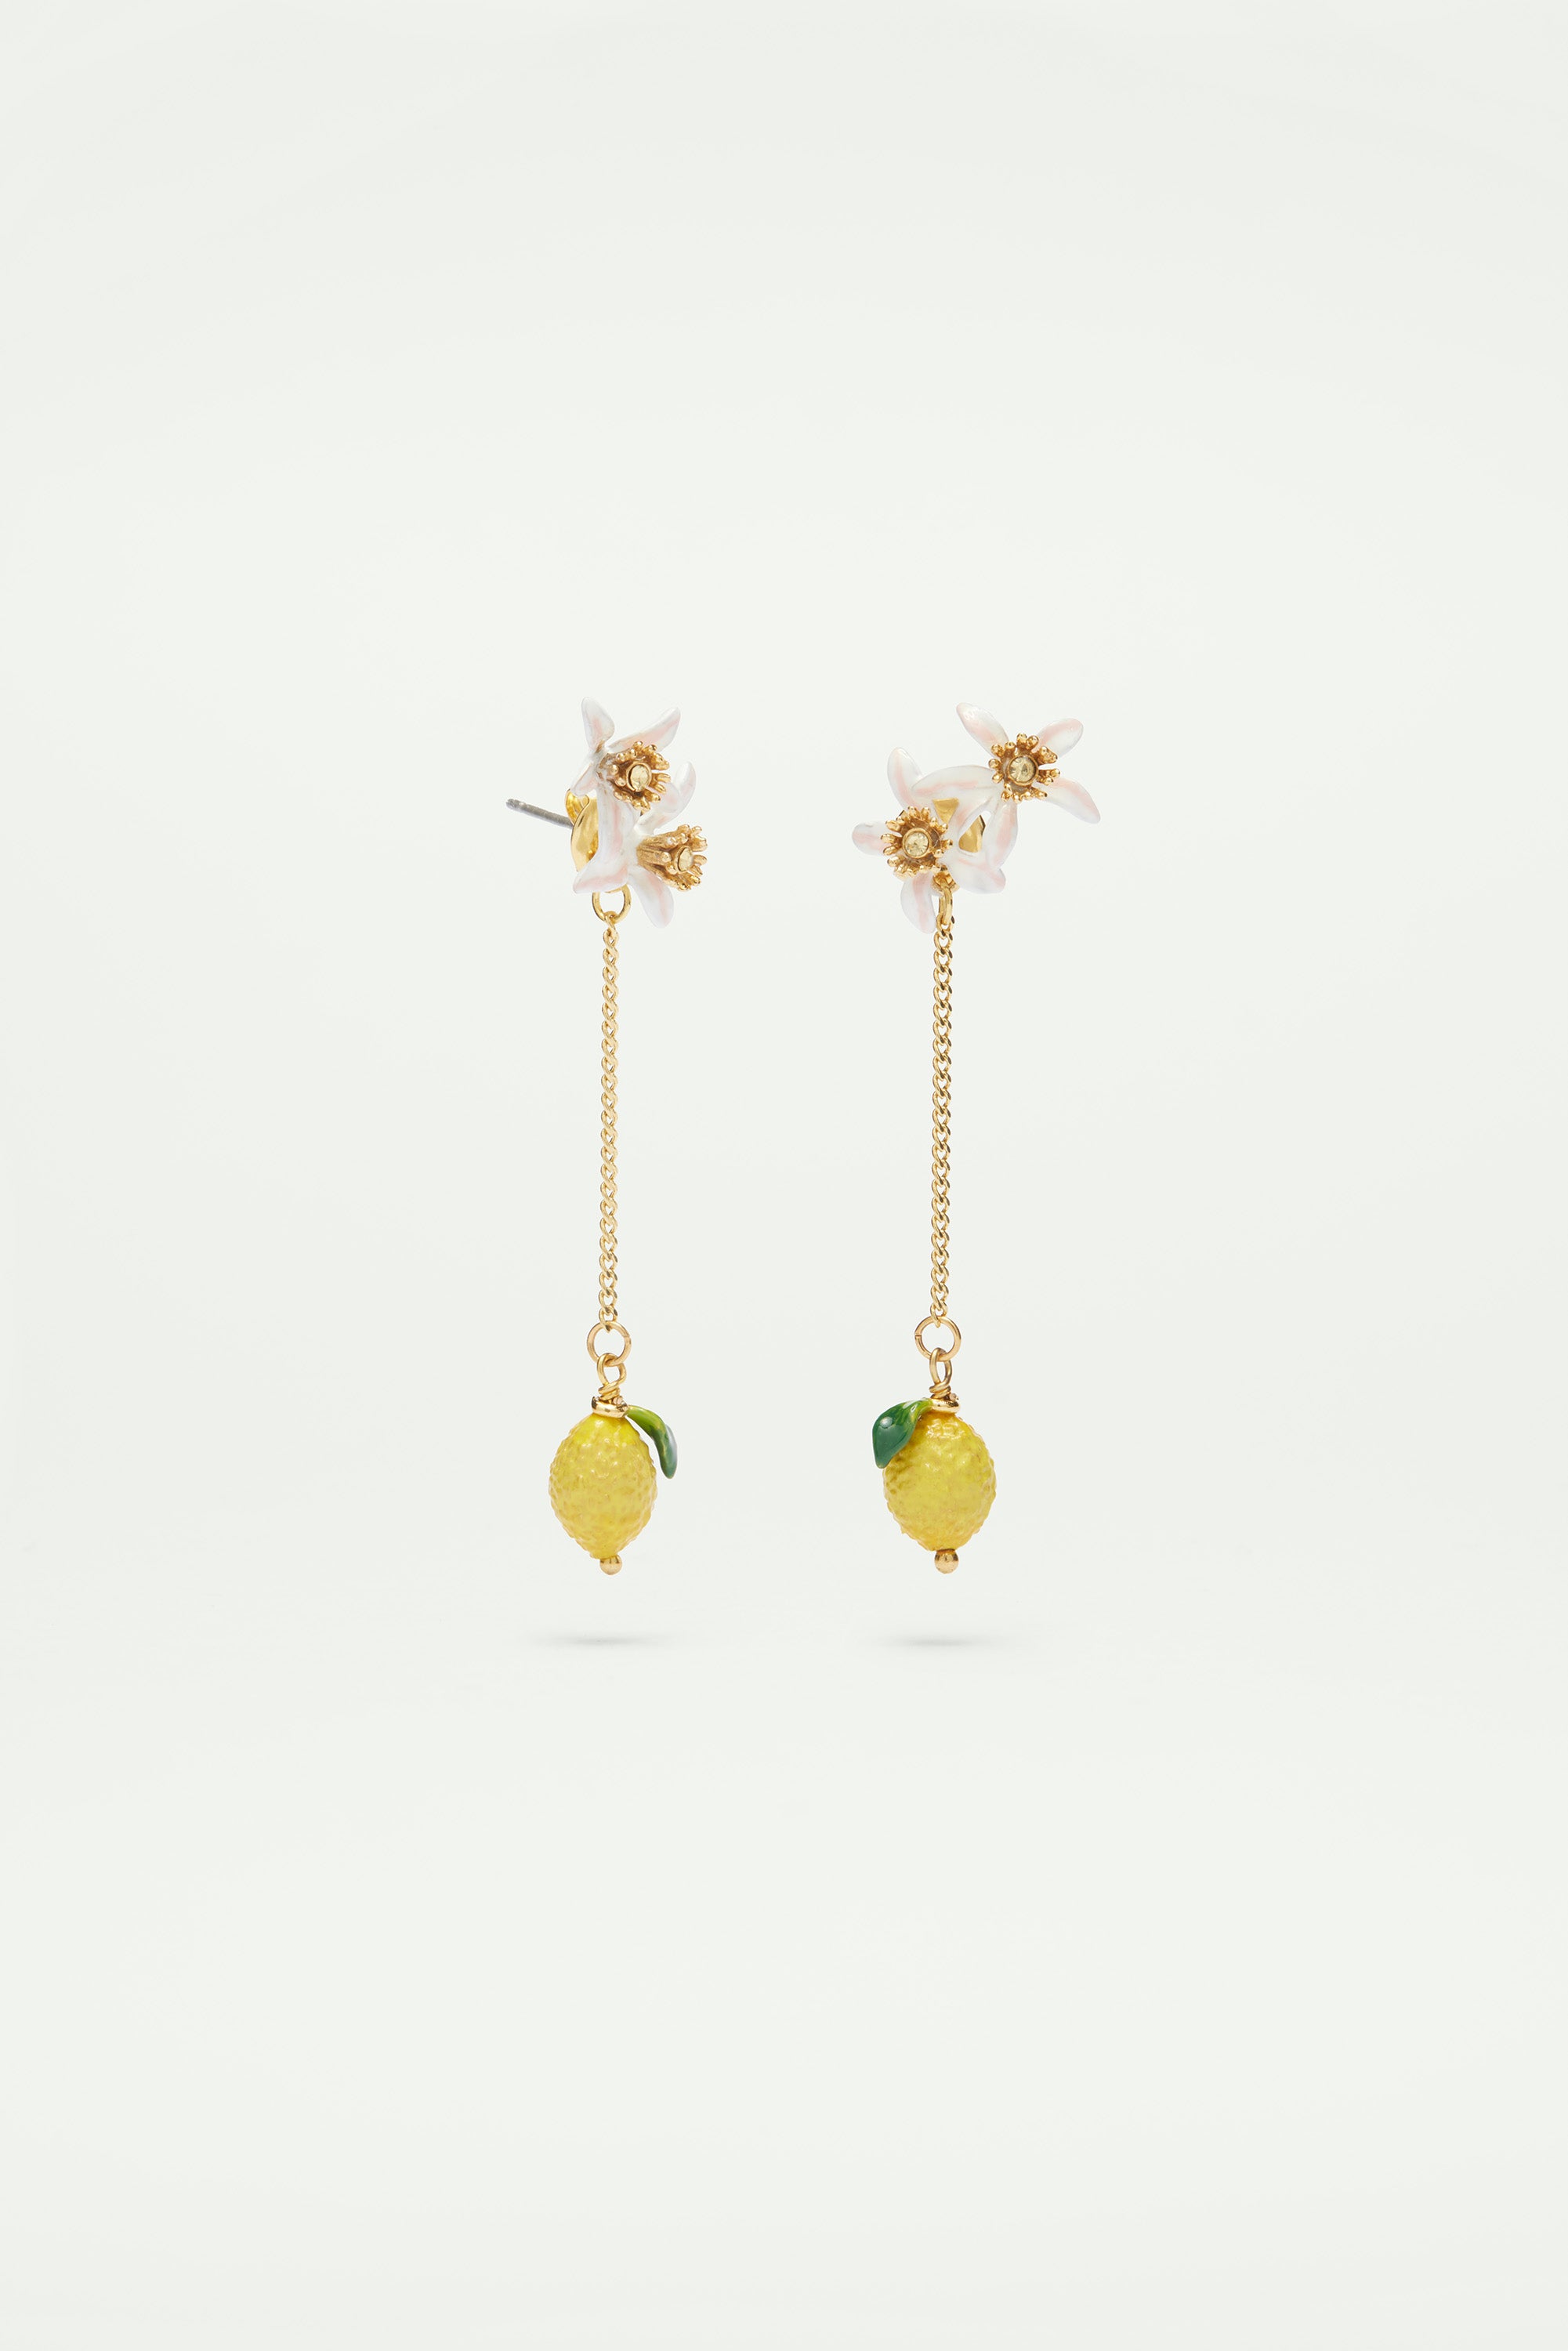 Lemon and lemon blossom dangling post earrings